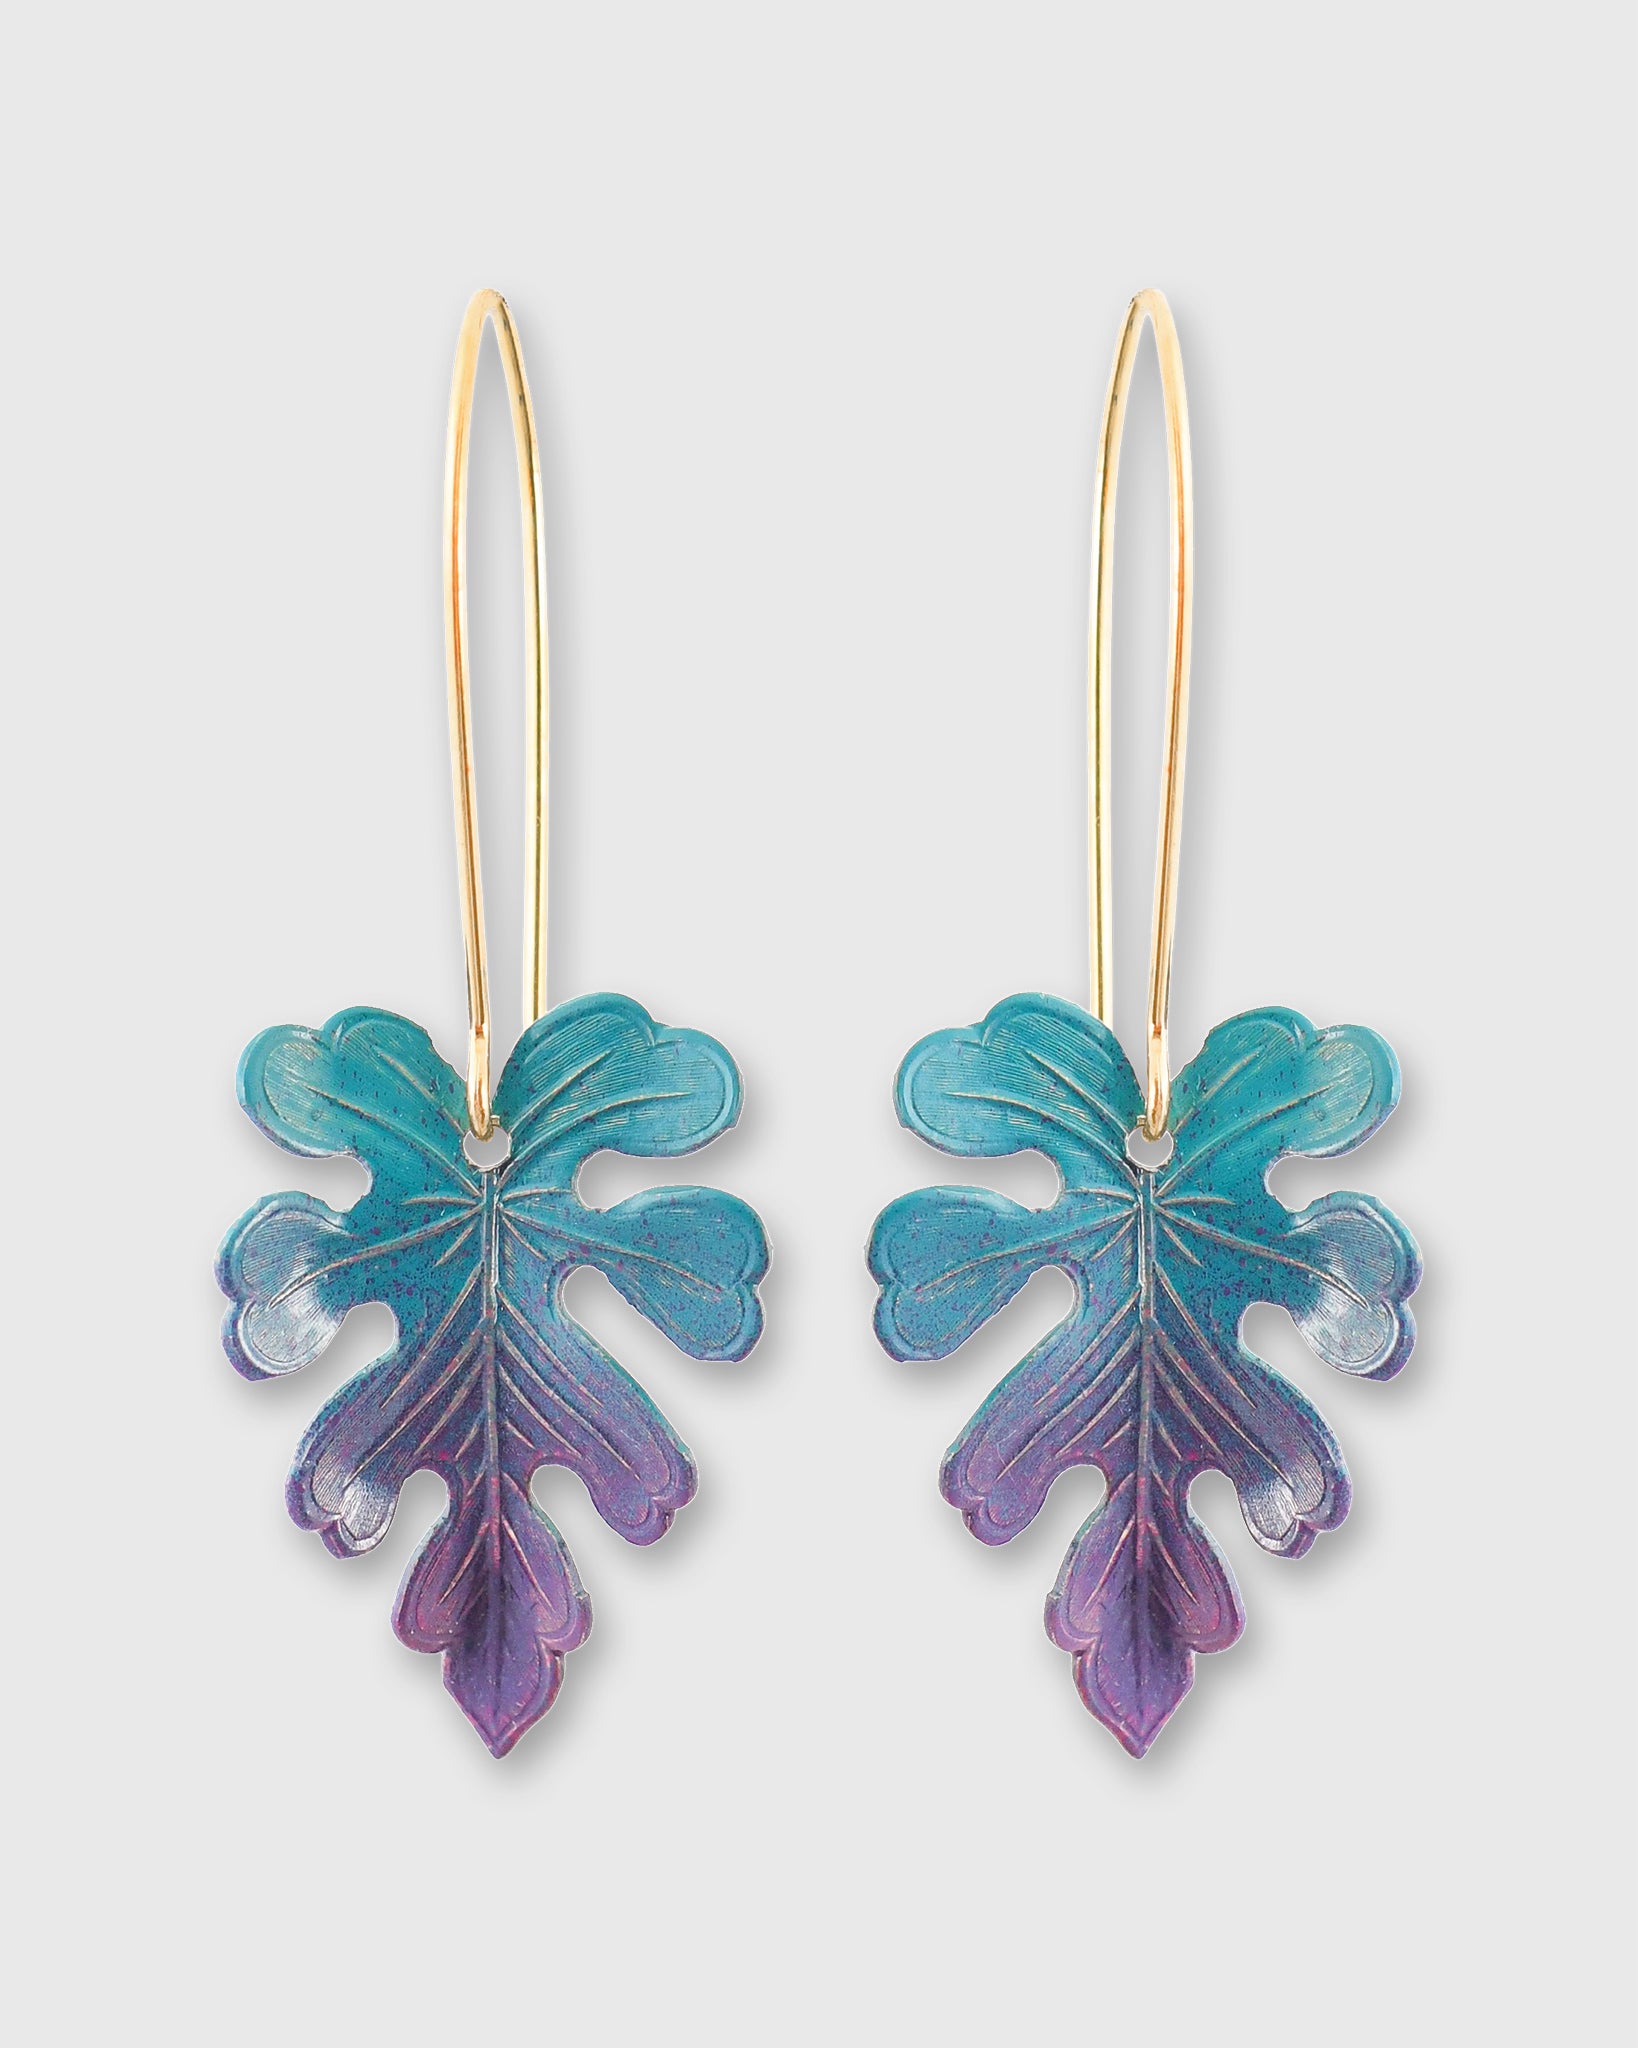 Bahia Earrings in Blue/Purple Ombre